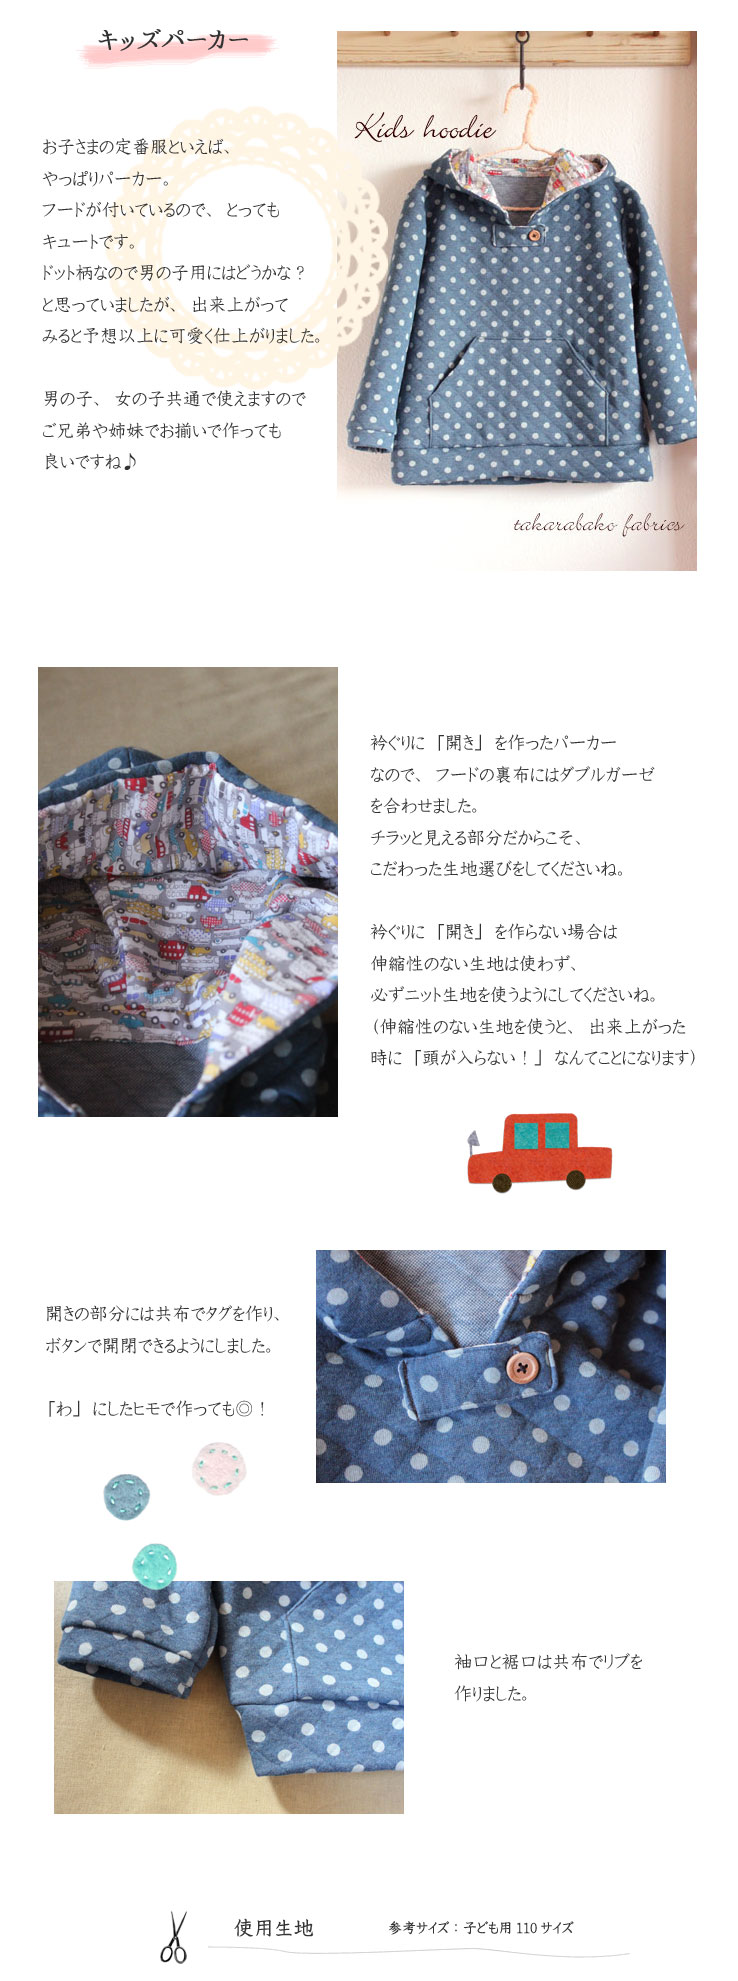 布・生地の販売/通販 takarabako fabrics【キルトニット・キッズパーカー＆カバーオール】